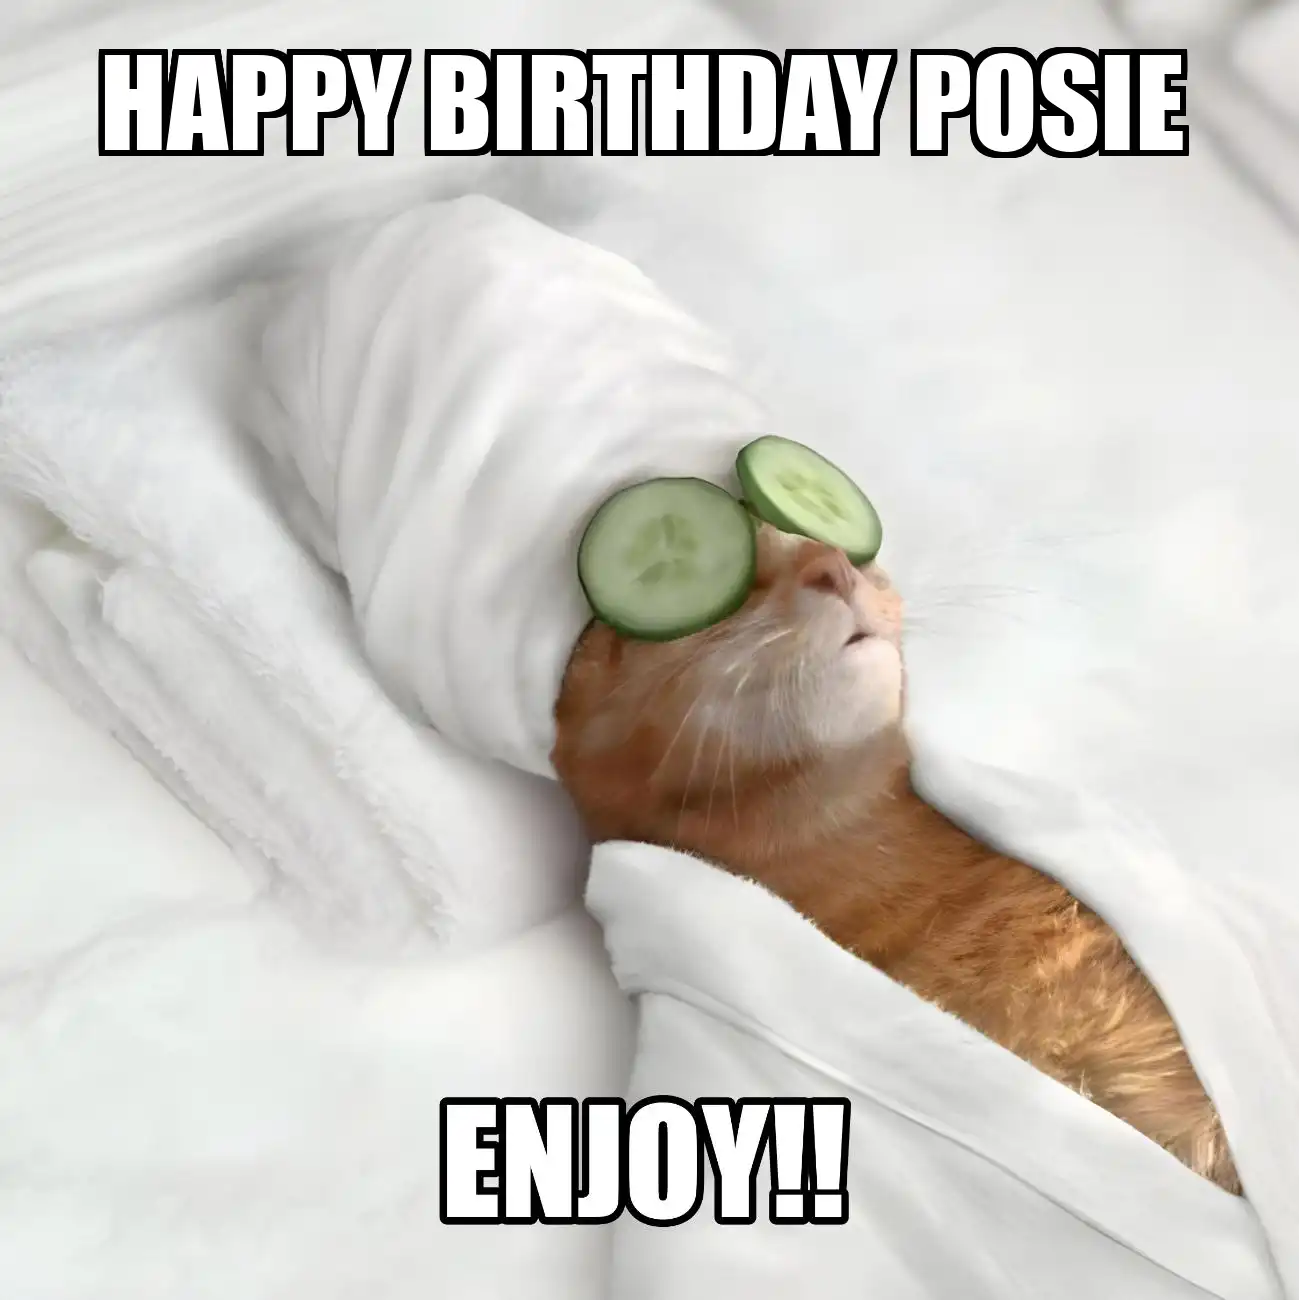 Happy Birthday Posie Enjoy Cat Meme